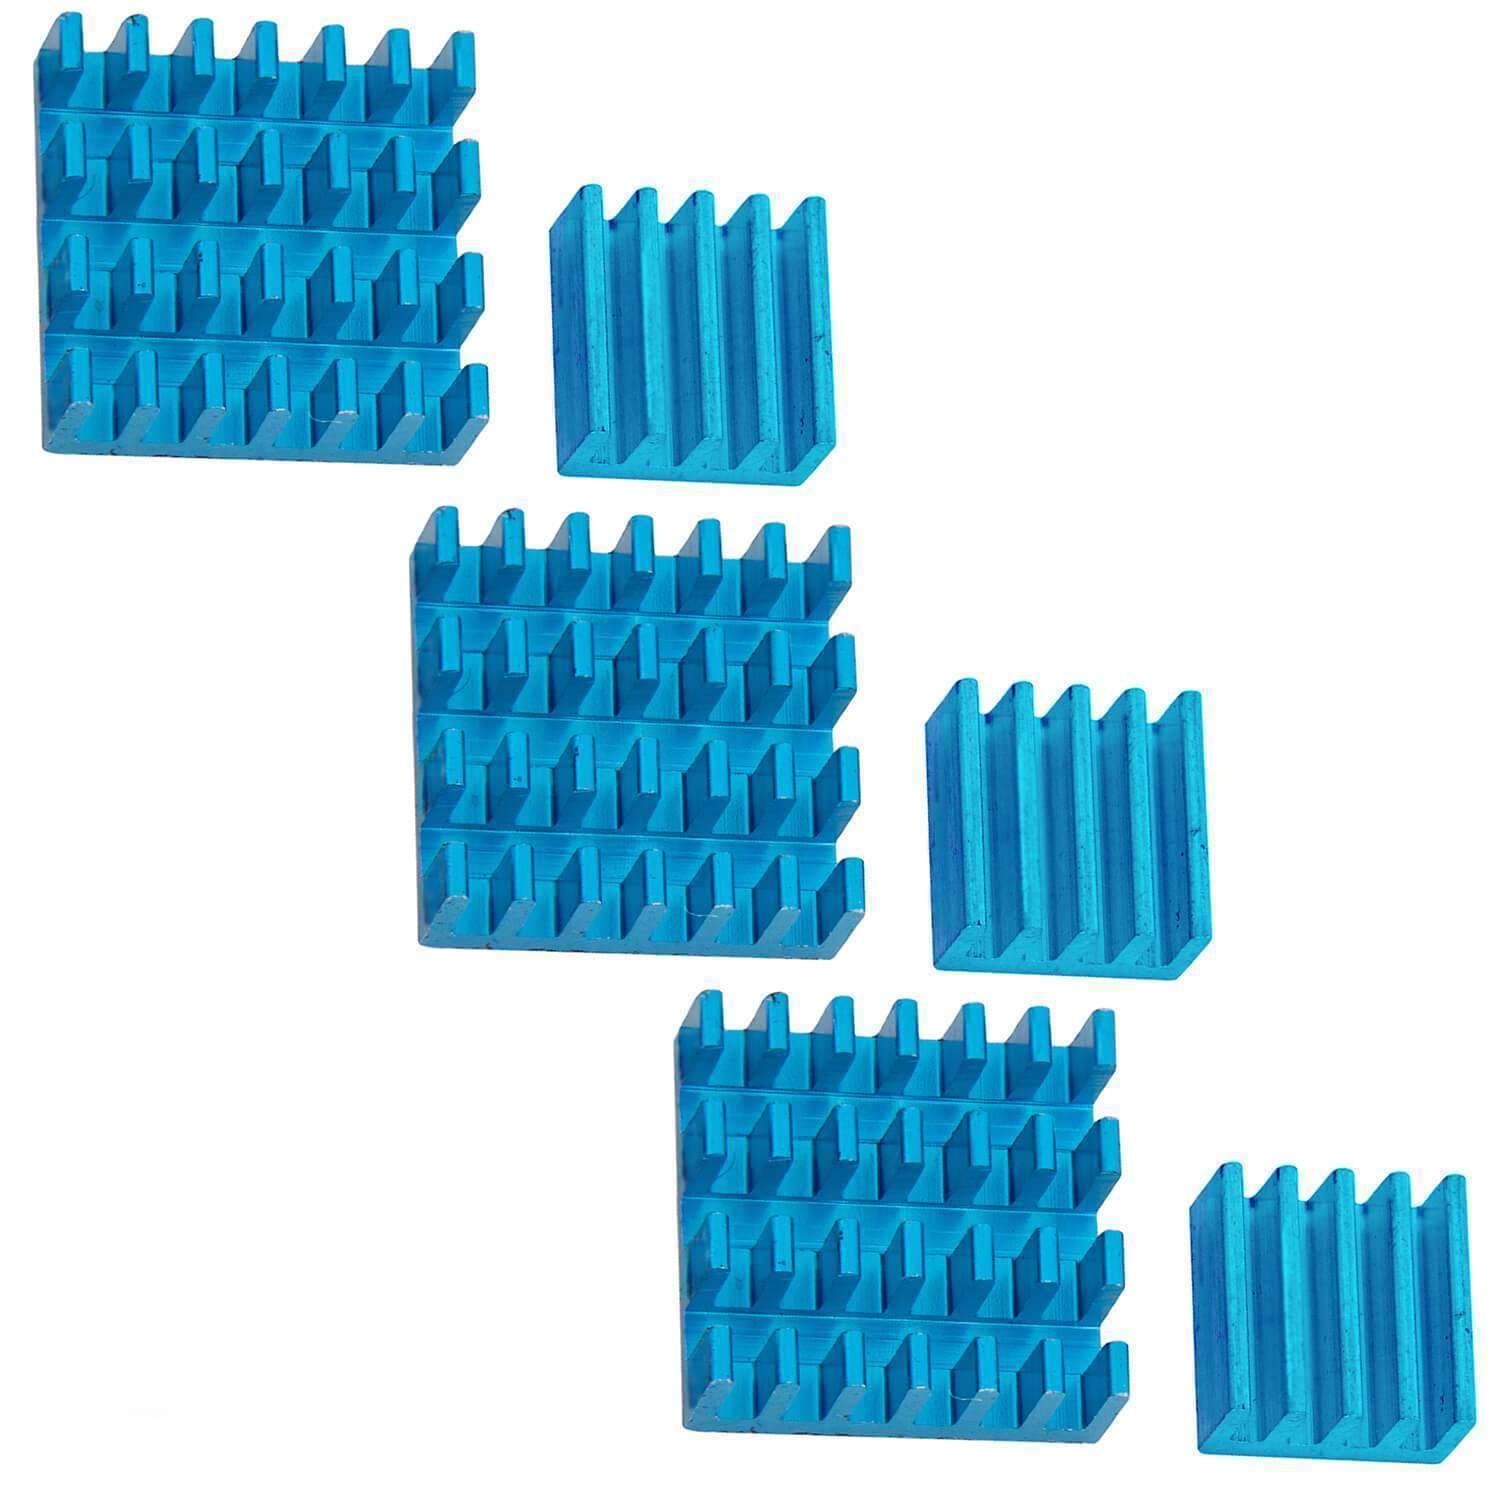 2er Set blaue Alu Kühlkörper passiv für Raspberry Pi 3 mit wärmeleitender Spezialklebefolie RaspberryPi Zubehör AZ-Delivery 3x Set 